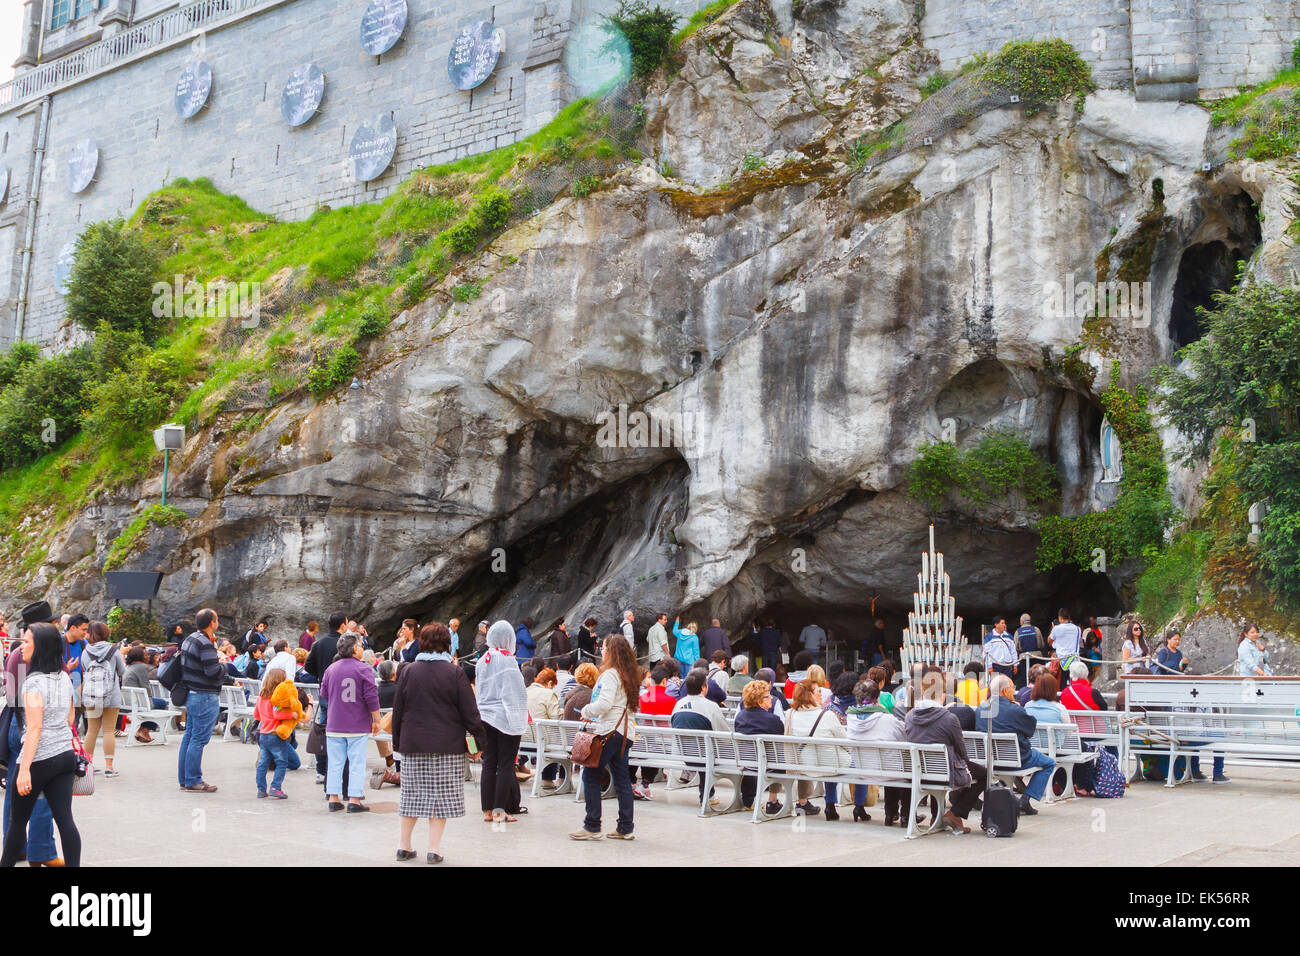 Grotte de Massabielle, statue de Notre Dame de Lourdes et de pèlerins. La ville de Lourdes. Région Midi-Pyrénées, France, Europe. Banque D'Images